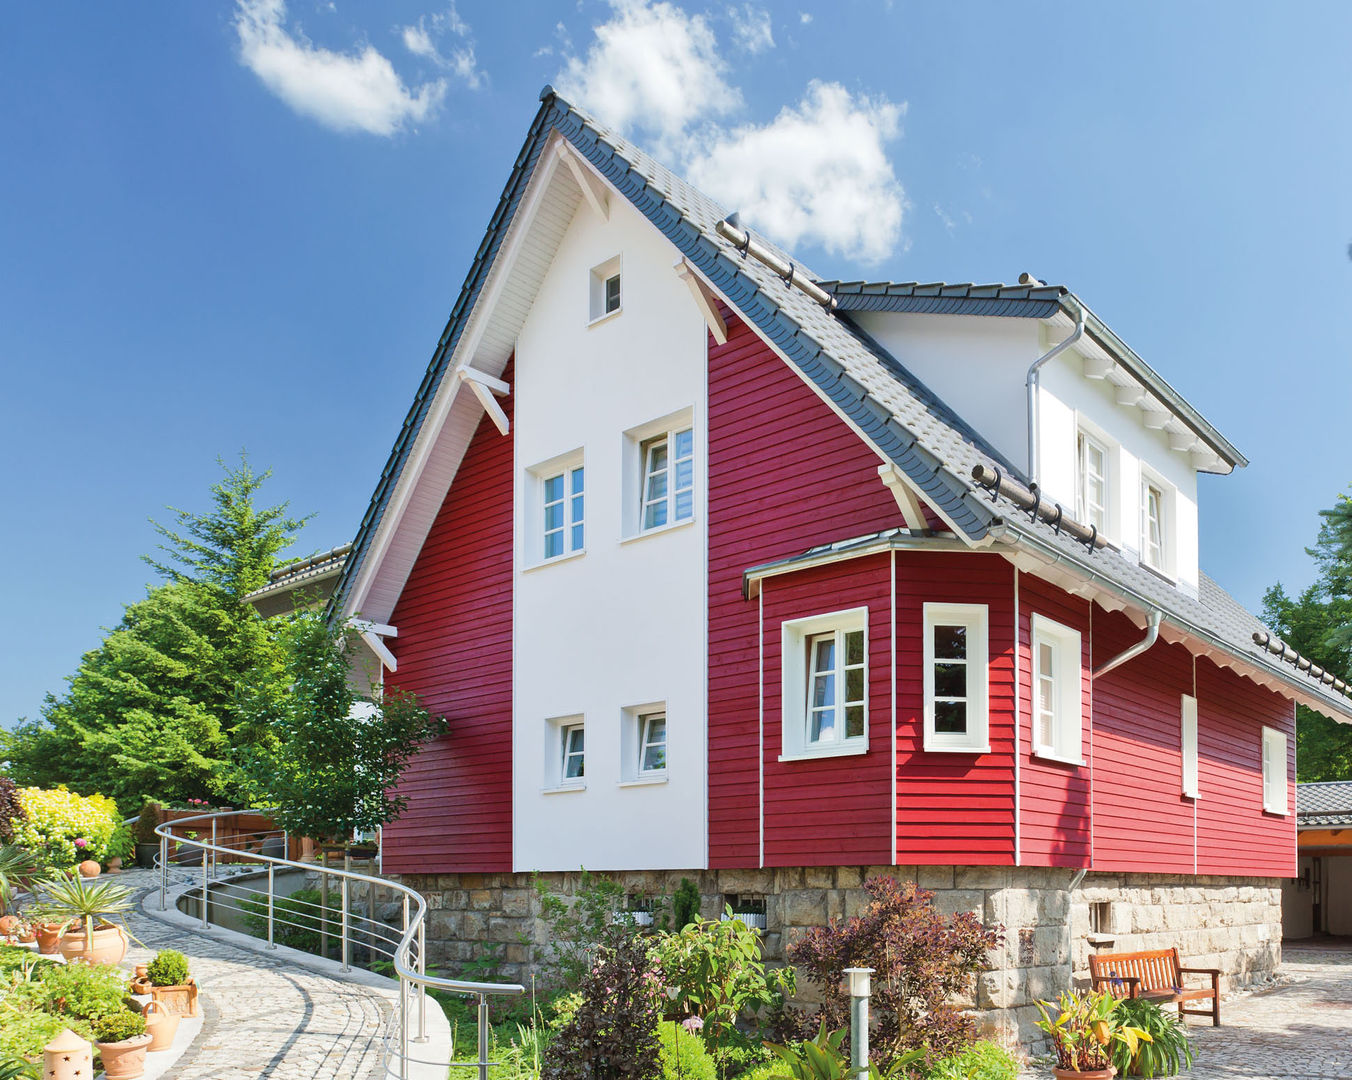 Dauerhaft schöne Fassadenprofile mit deckenden Holzfarben , MOCOPINUS GmbH & Co. KG MOCOPINUS GmbH & Co. KG Country style houses